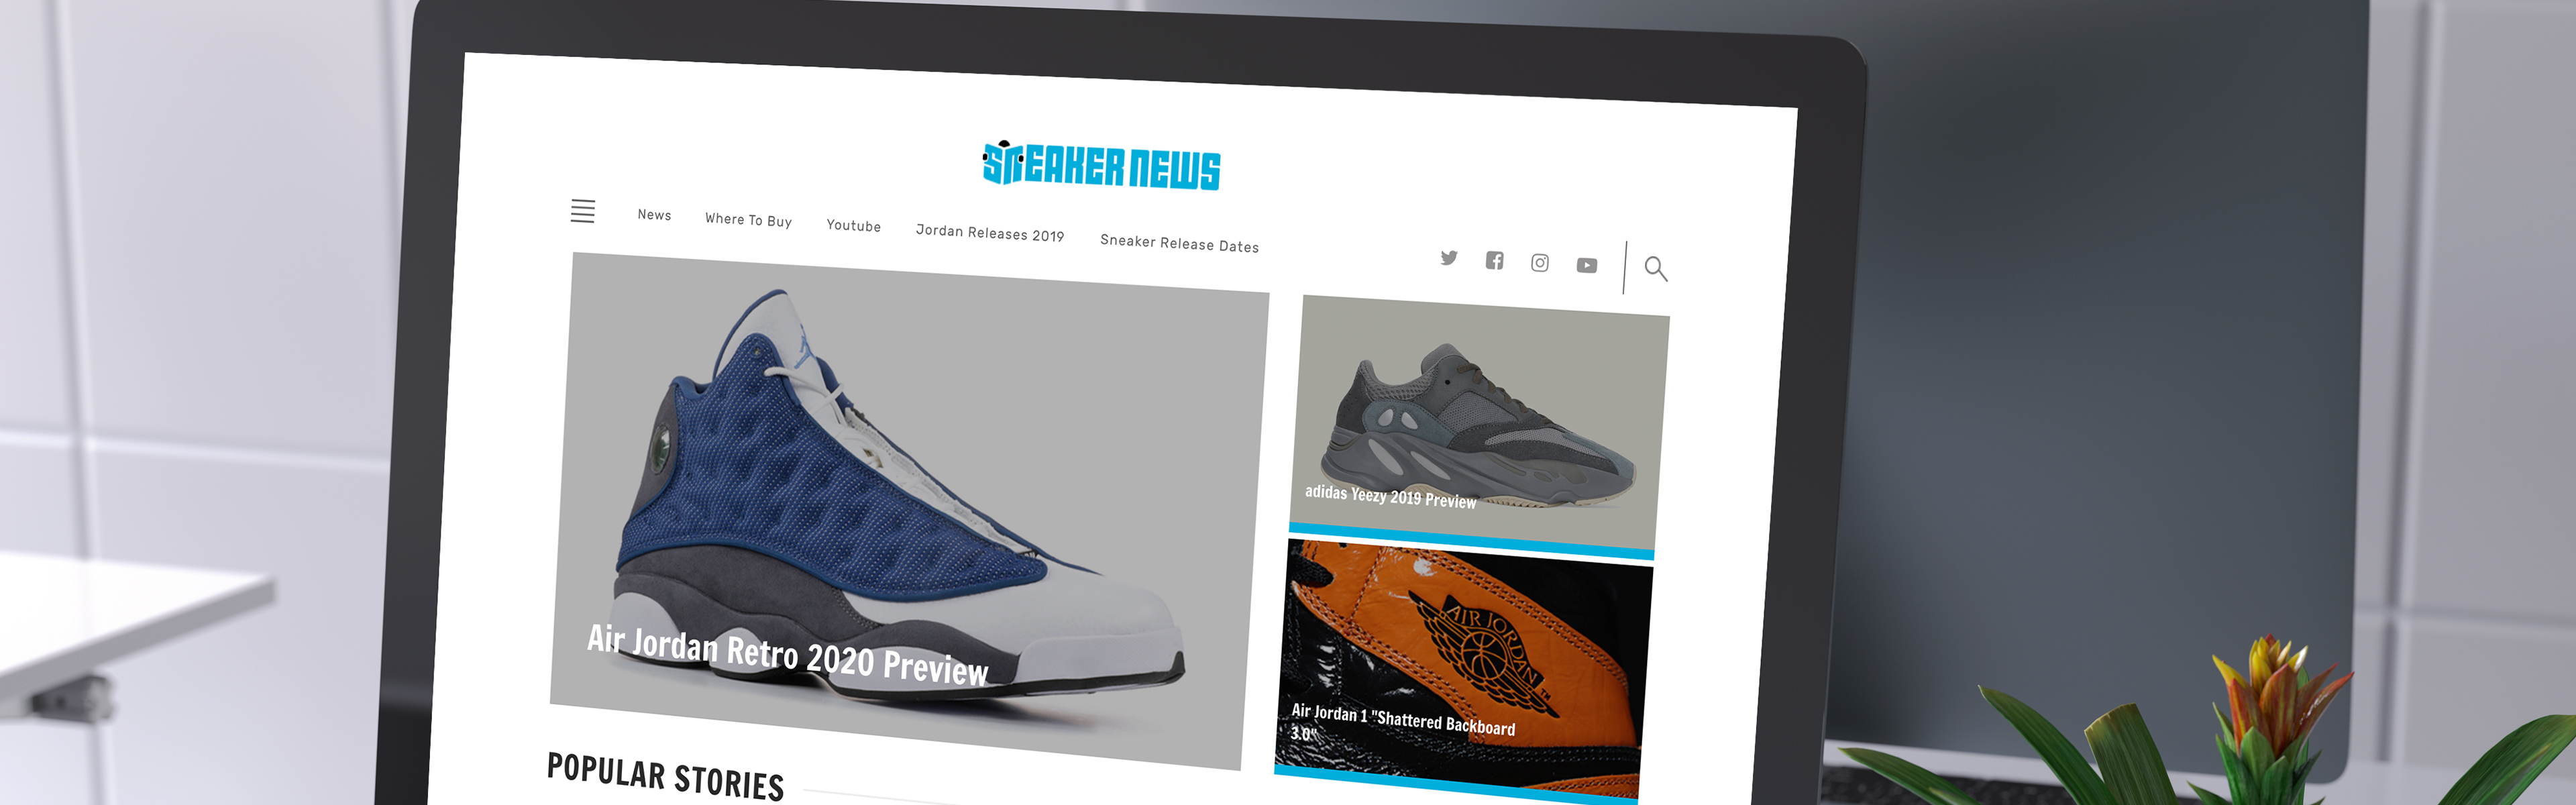 sneakers powered by WordPress VIP 